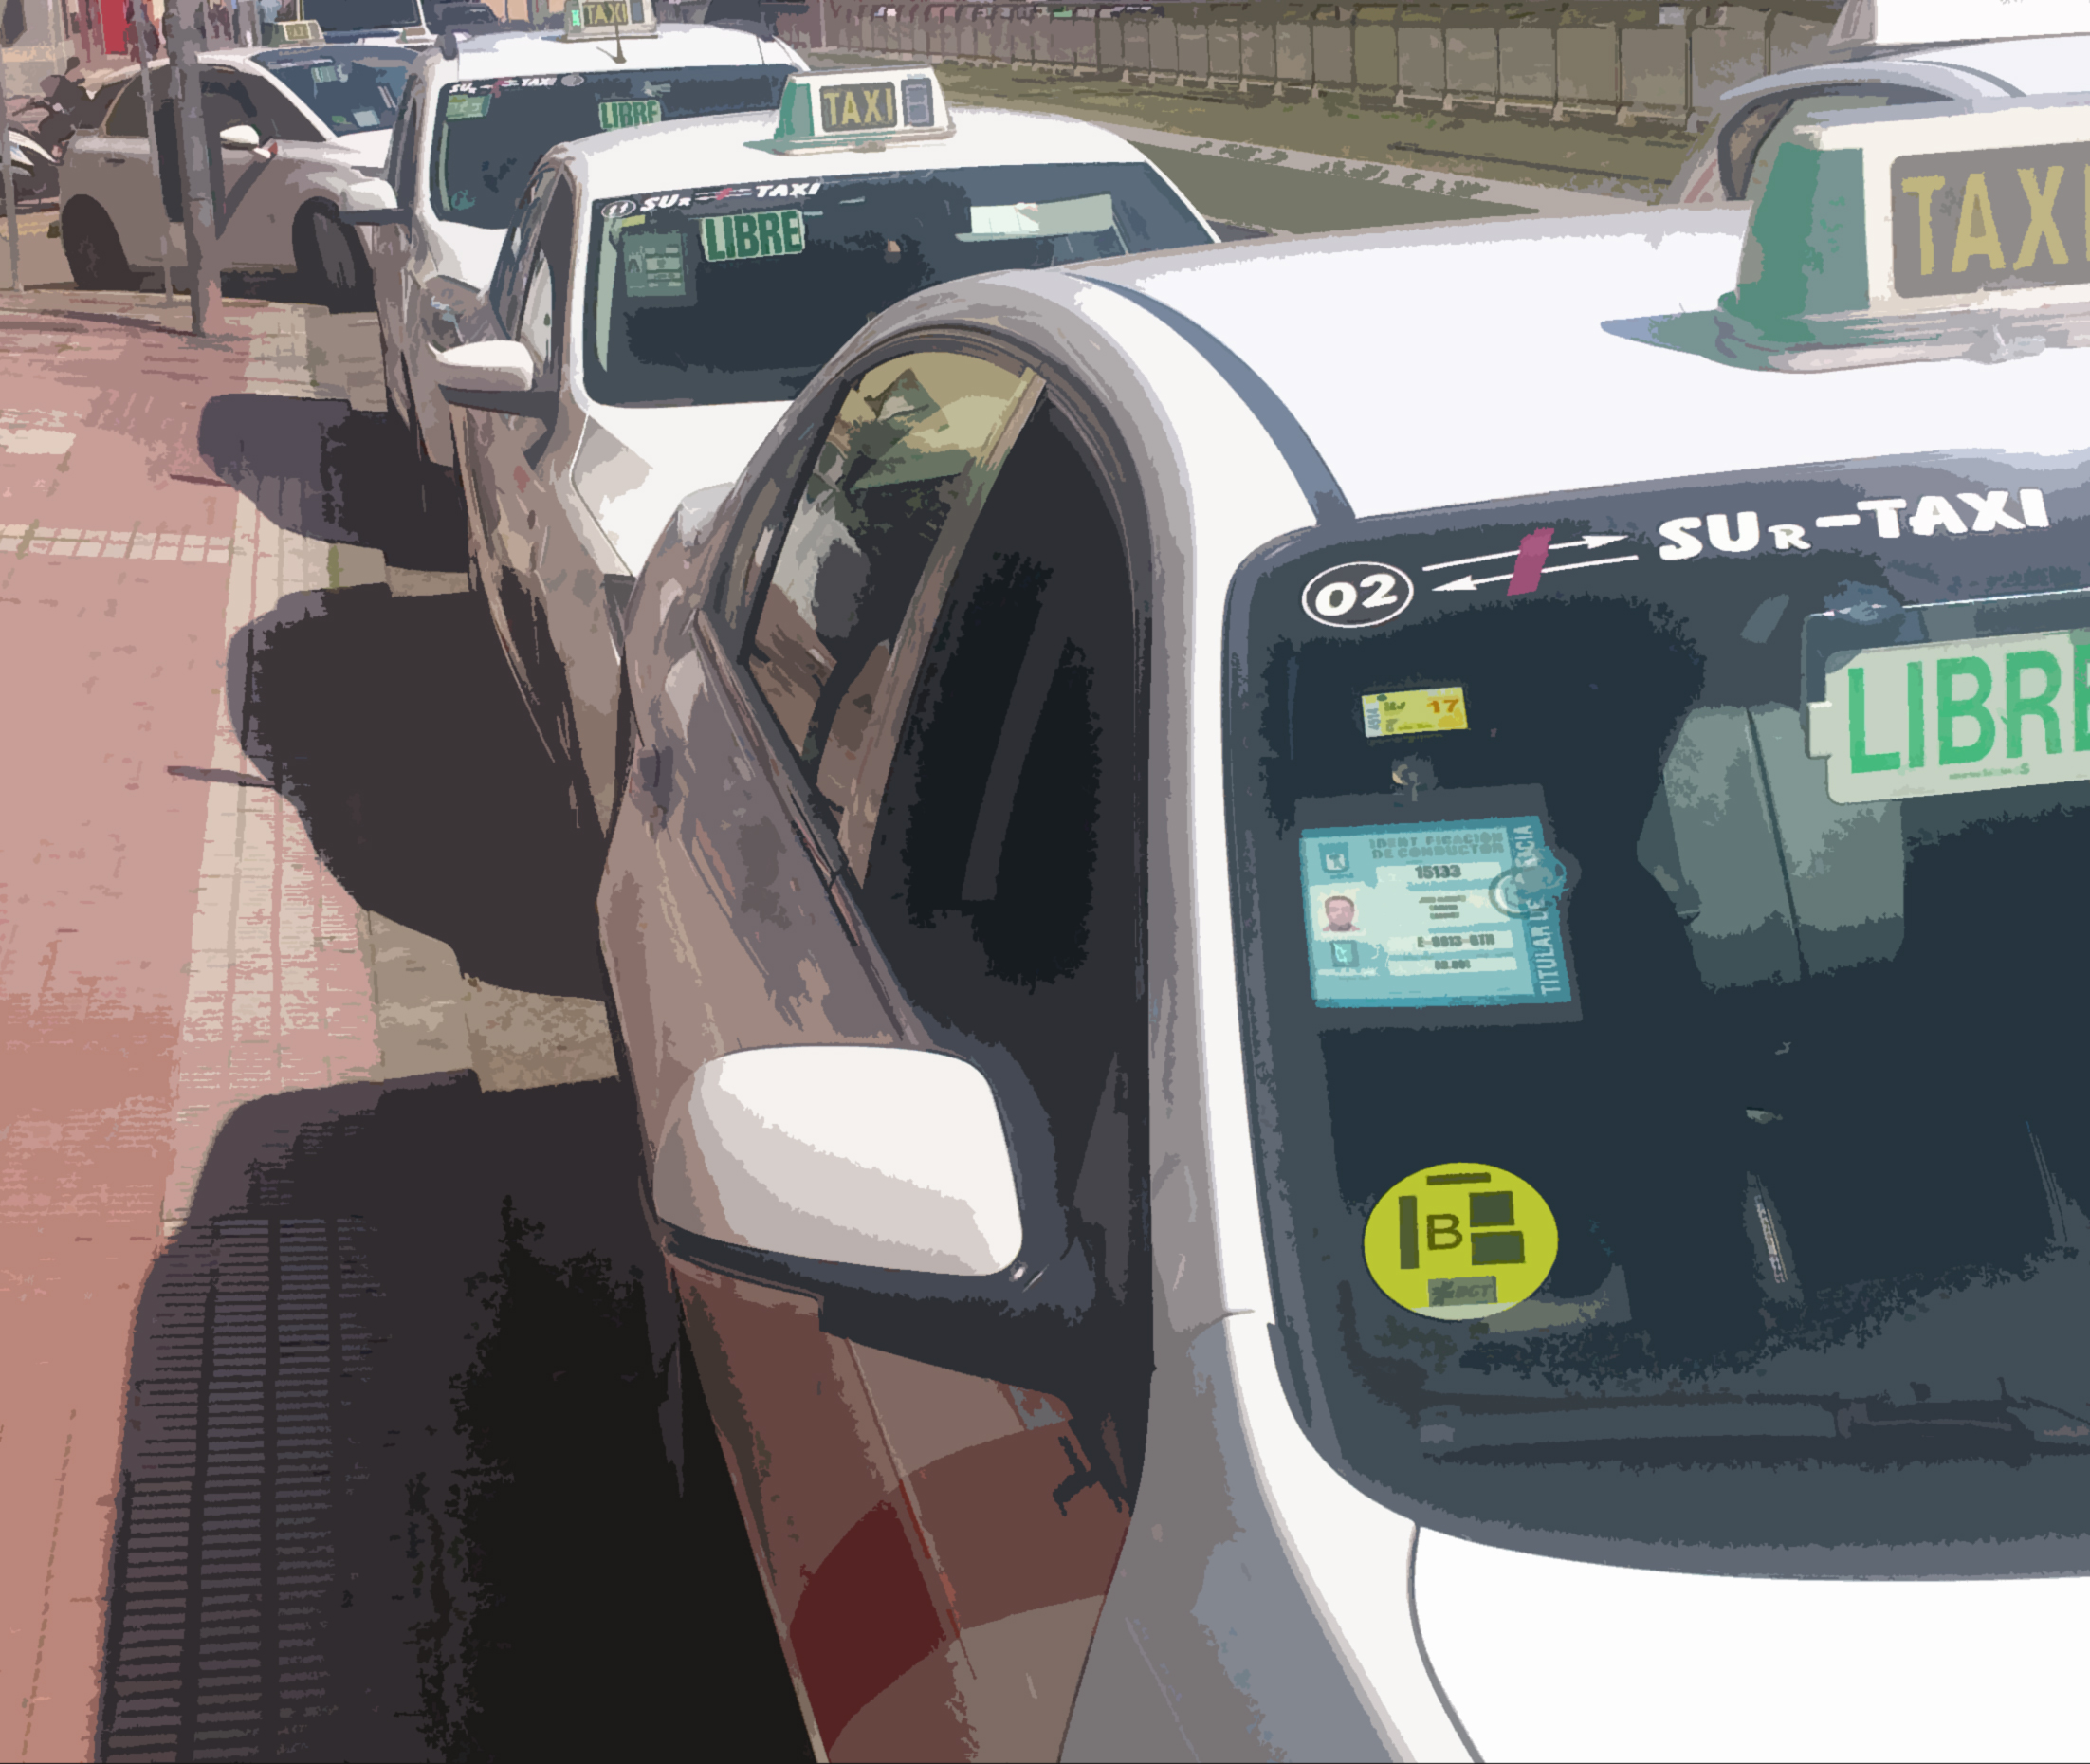 Sur-Taxi, el servicio de taxi de la zona Sur de Madrid